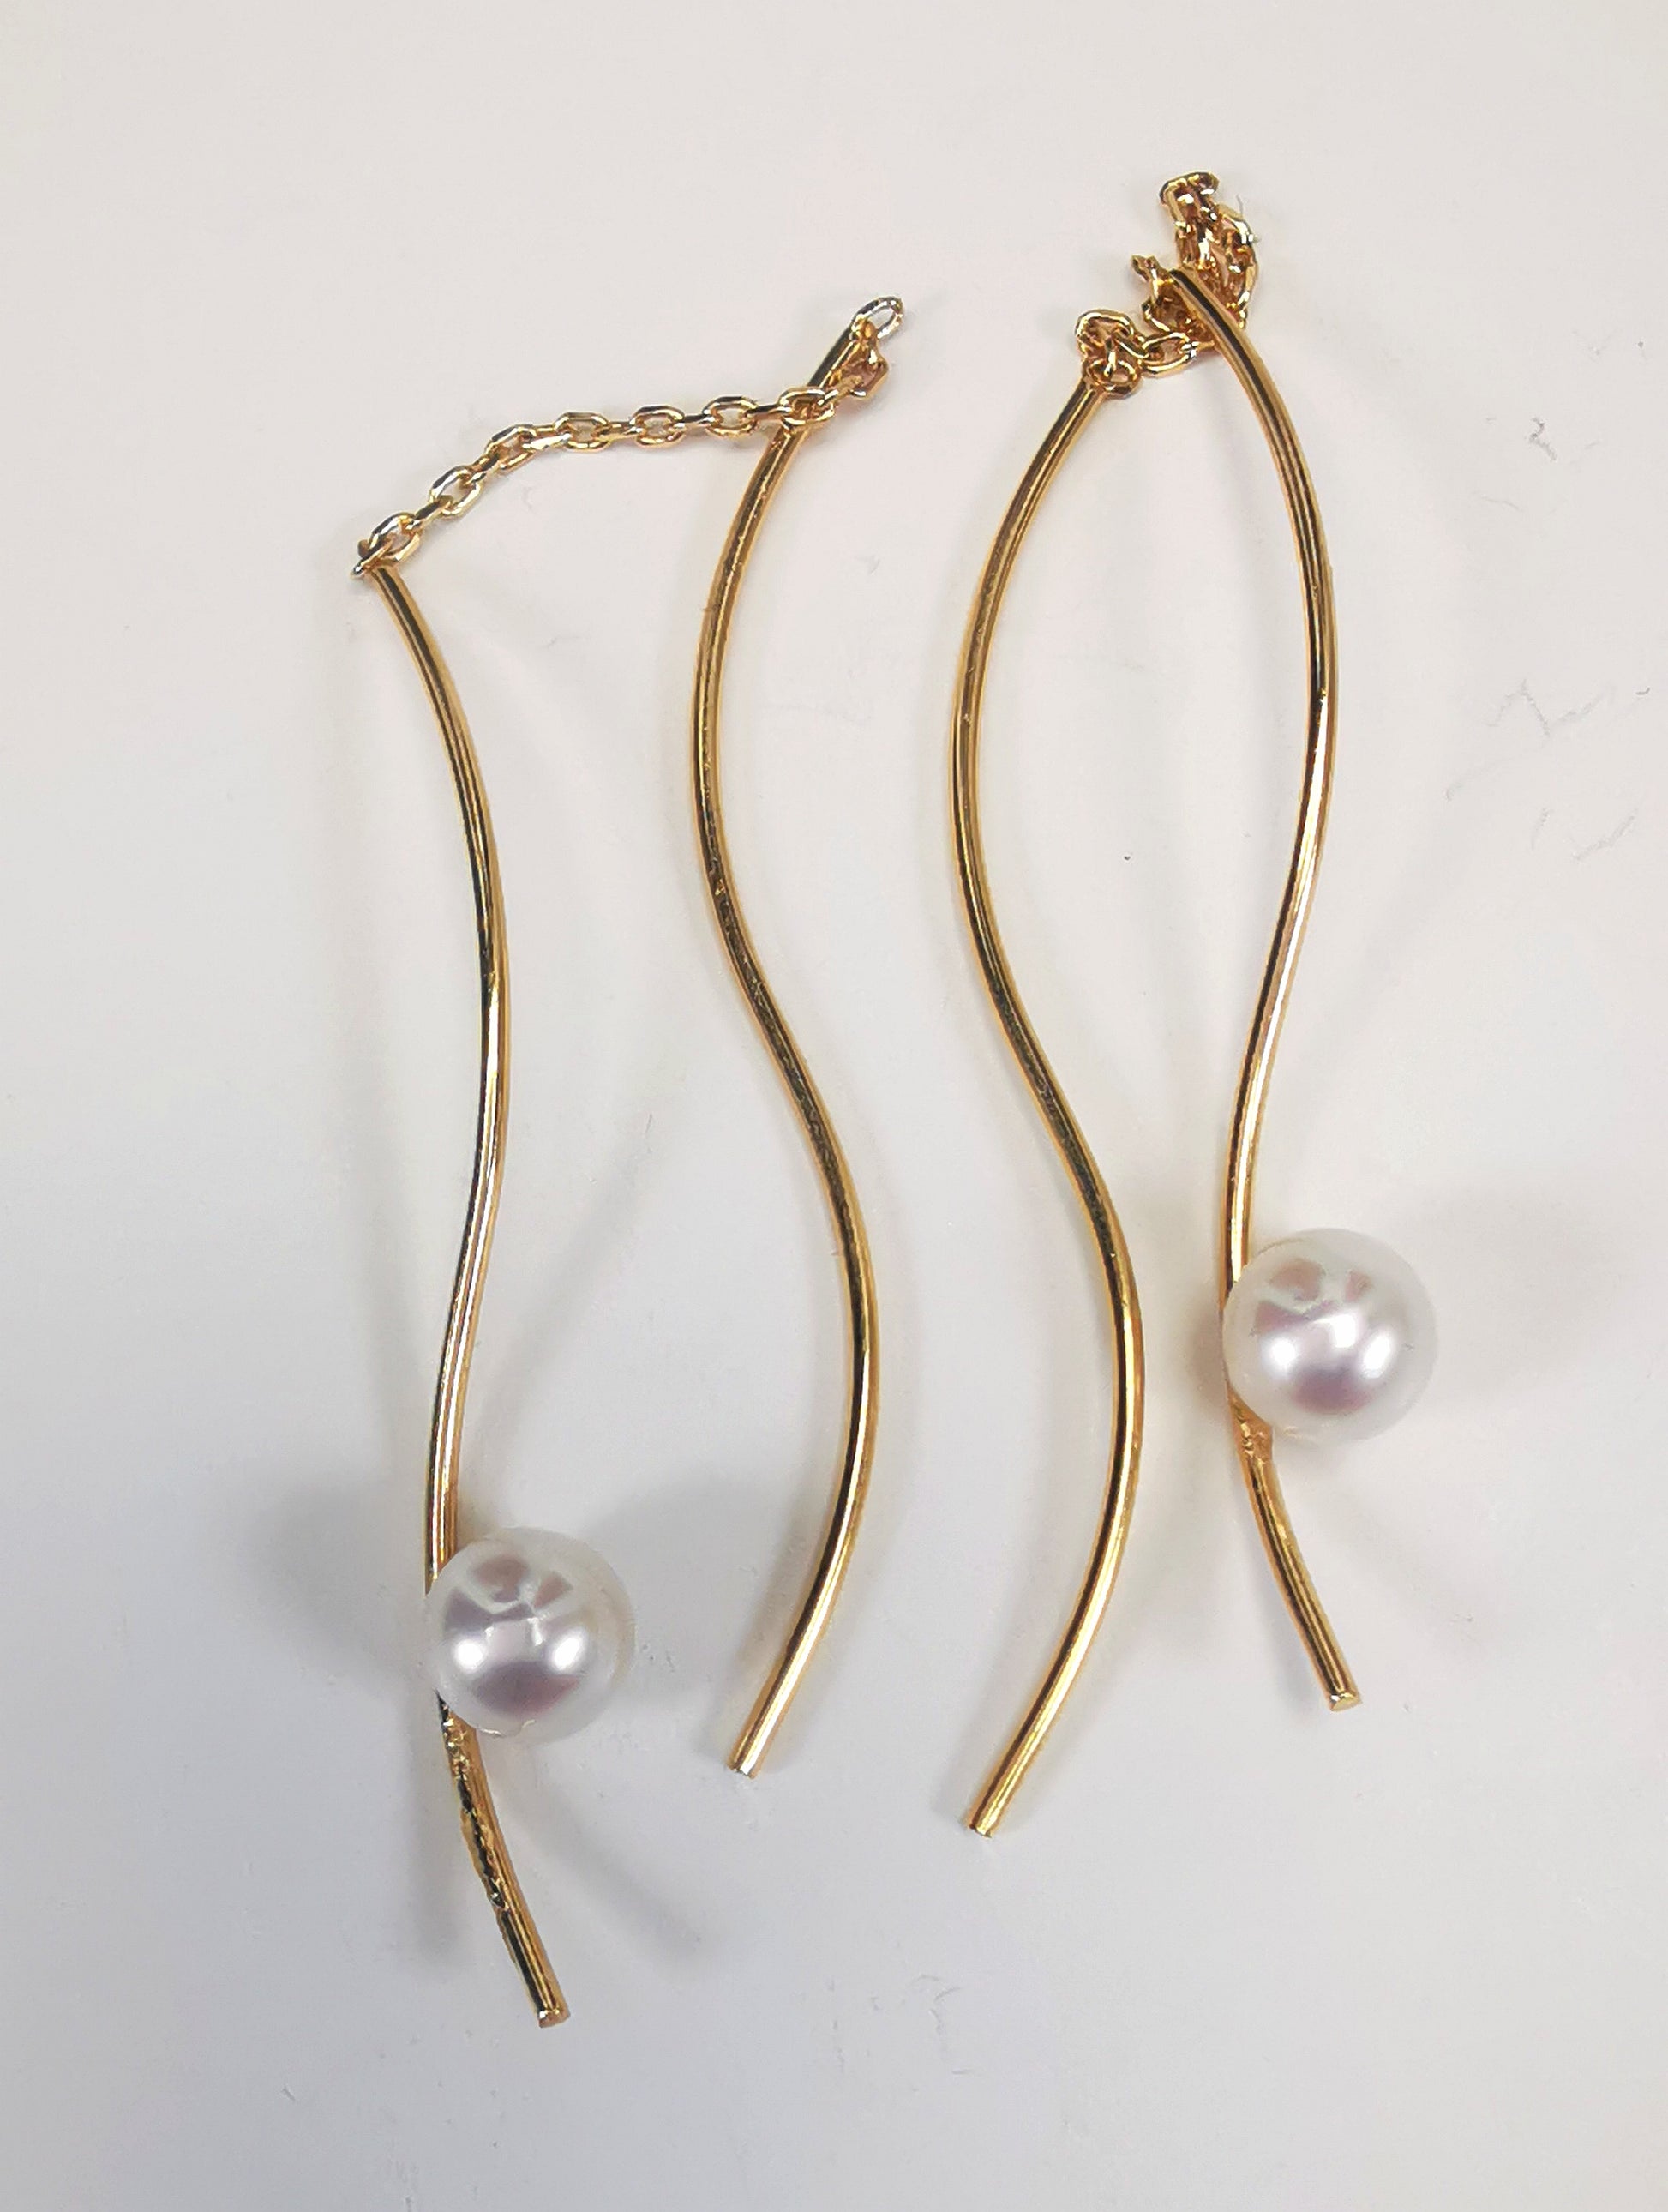 Boucles d'oreilles perles de culture blanches rondes 5mm sur pendants plaqués or. Les pendants sont constitués de deux "s" longs de 45mm reliés par 15mm de chaine. Sur un des 2 "s", la perle est montée perpendiculairement, à 8mm du bas. Présentées cote à cote, perle en bas, la boucle de droite décalée vers le haut,  posées sur fond blanc. Vue de dessus.